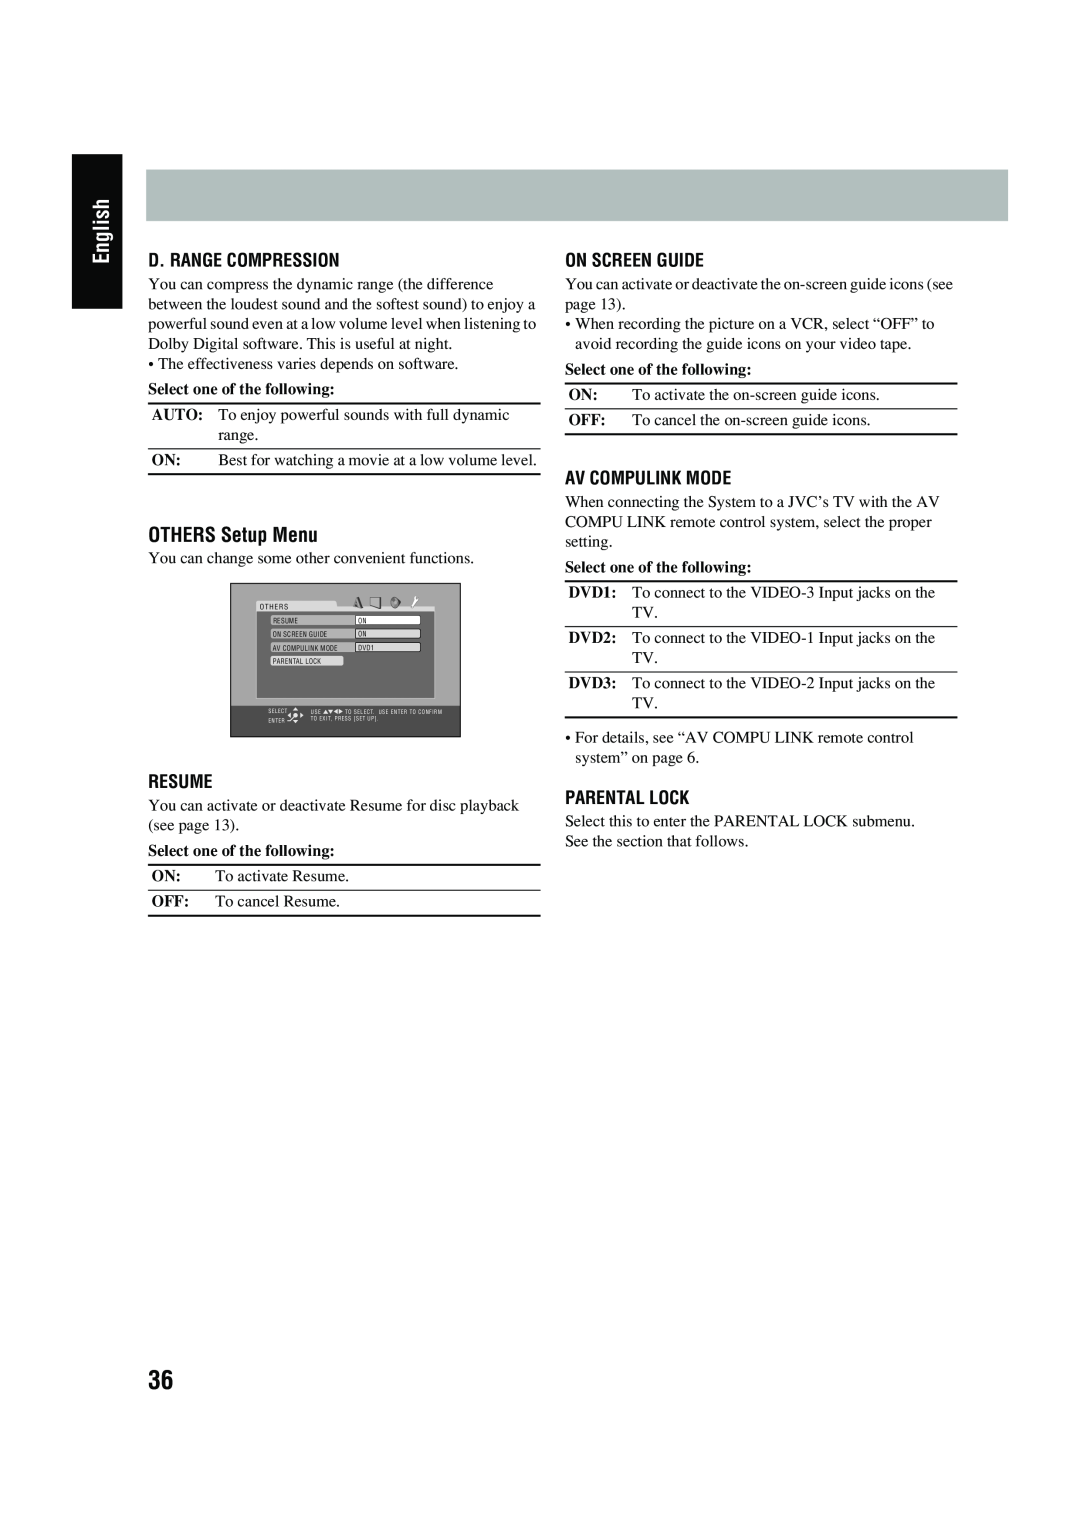 JVC UX-P450 English, OTHERS Setup Menu, D. Range Compression, Resume, On Screen Guide, Av Compulink Mode, Parental Lock 